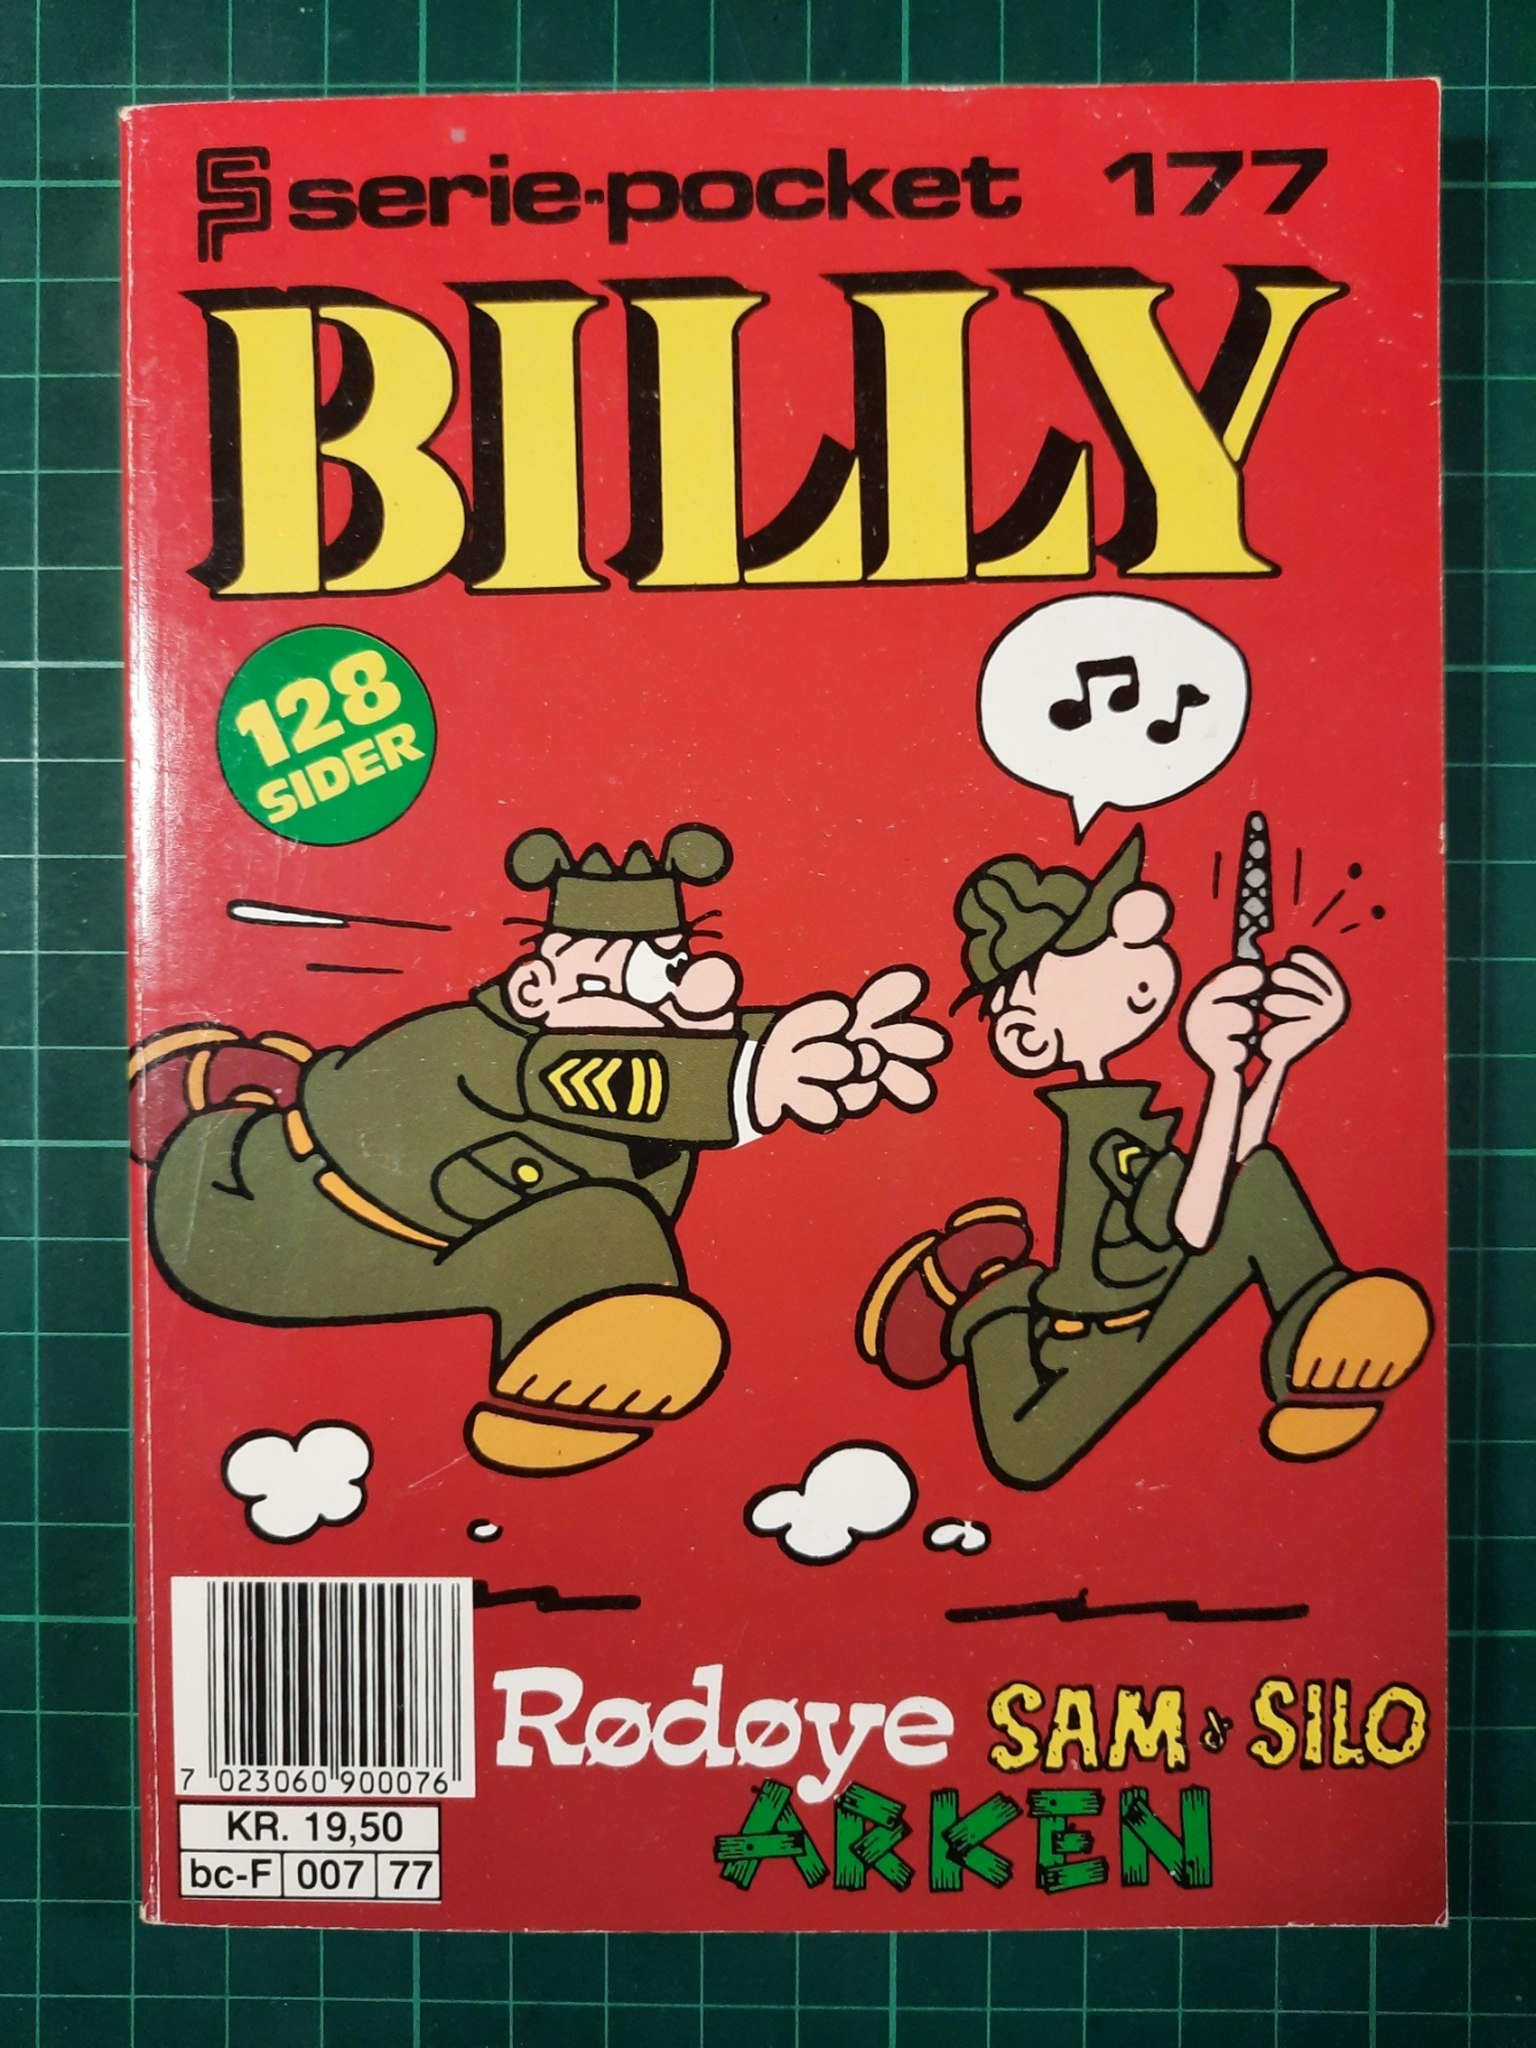 Serie-pocket 177 : Billy